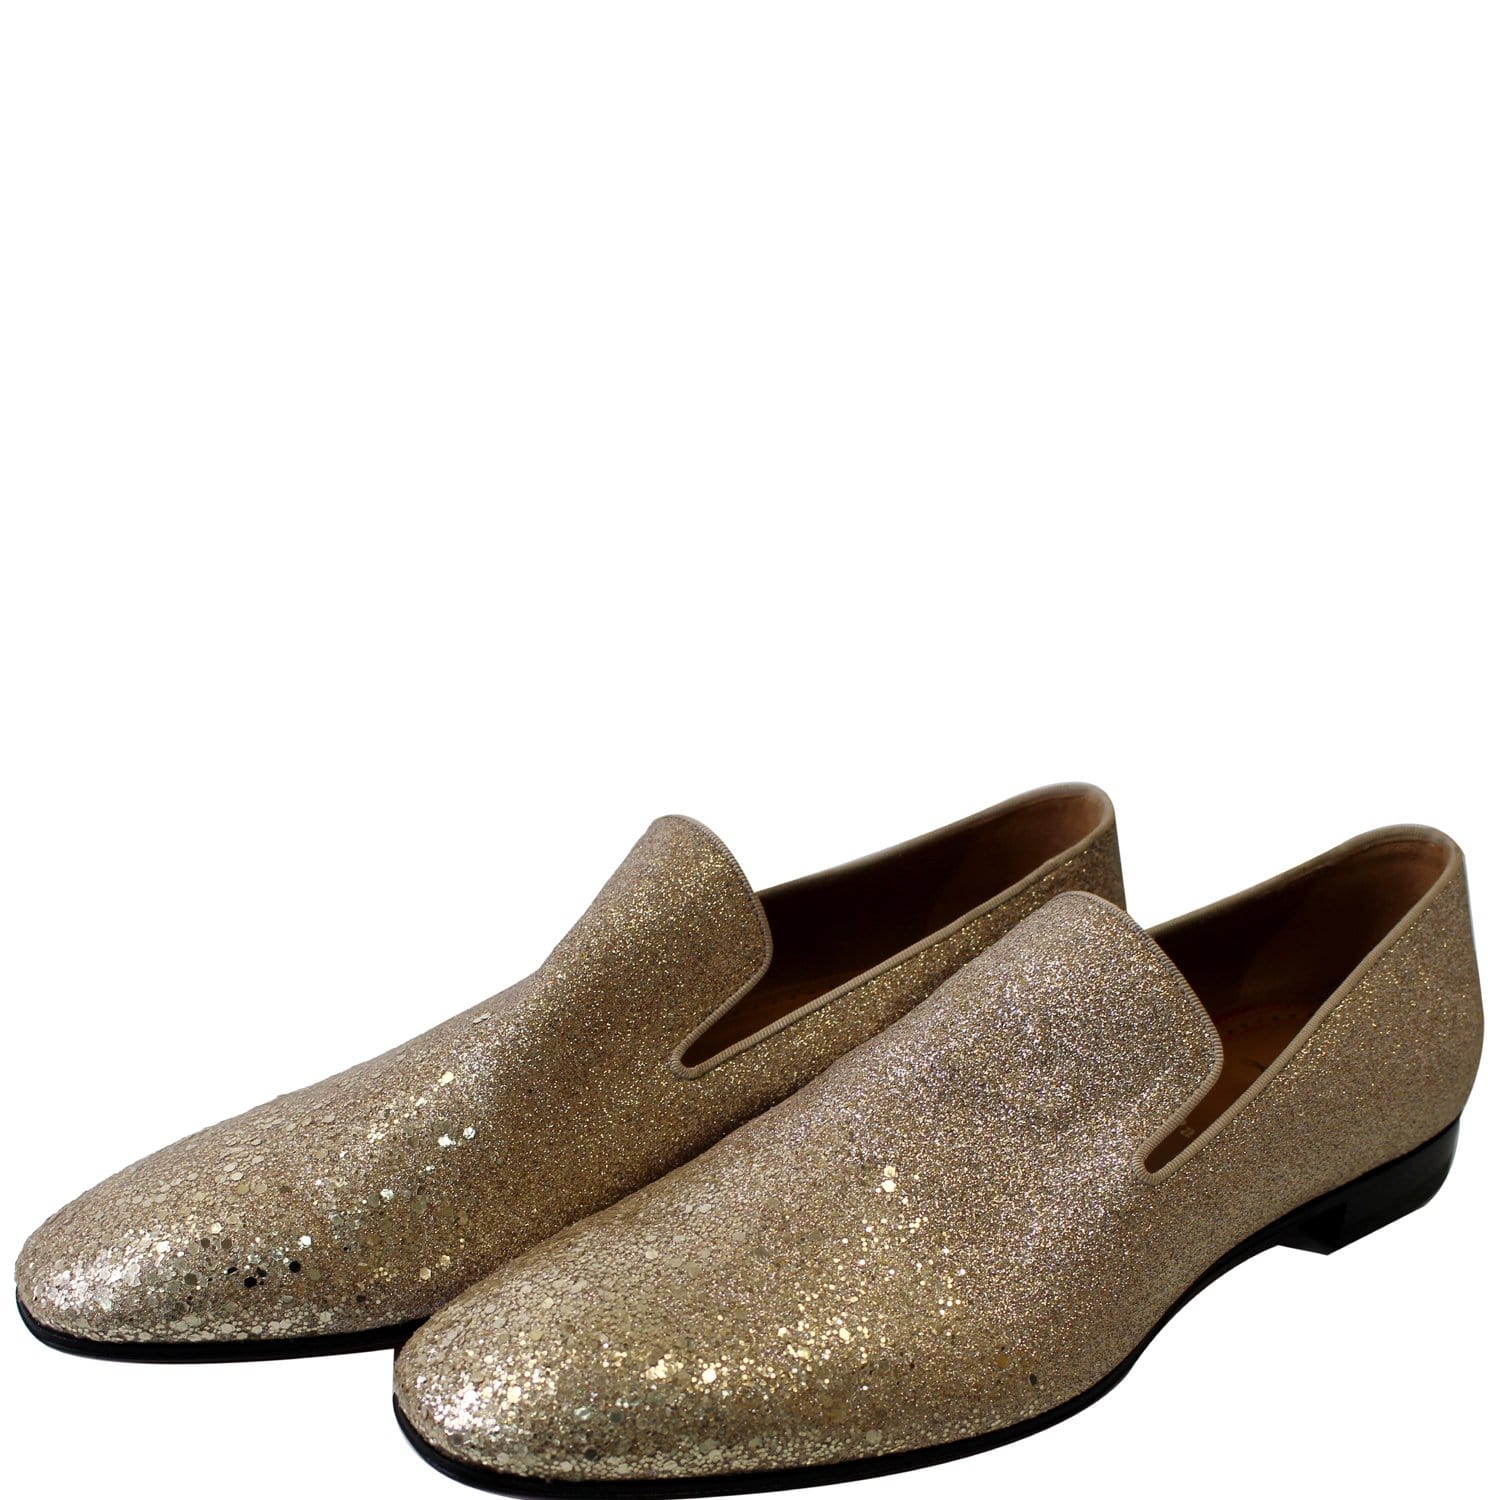 Grisling bøn udkast CHRISTIAN LOUBOUTIN Men's Dandelion Flat Glitter Dress Loafer Shoes Go